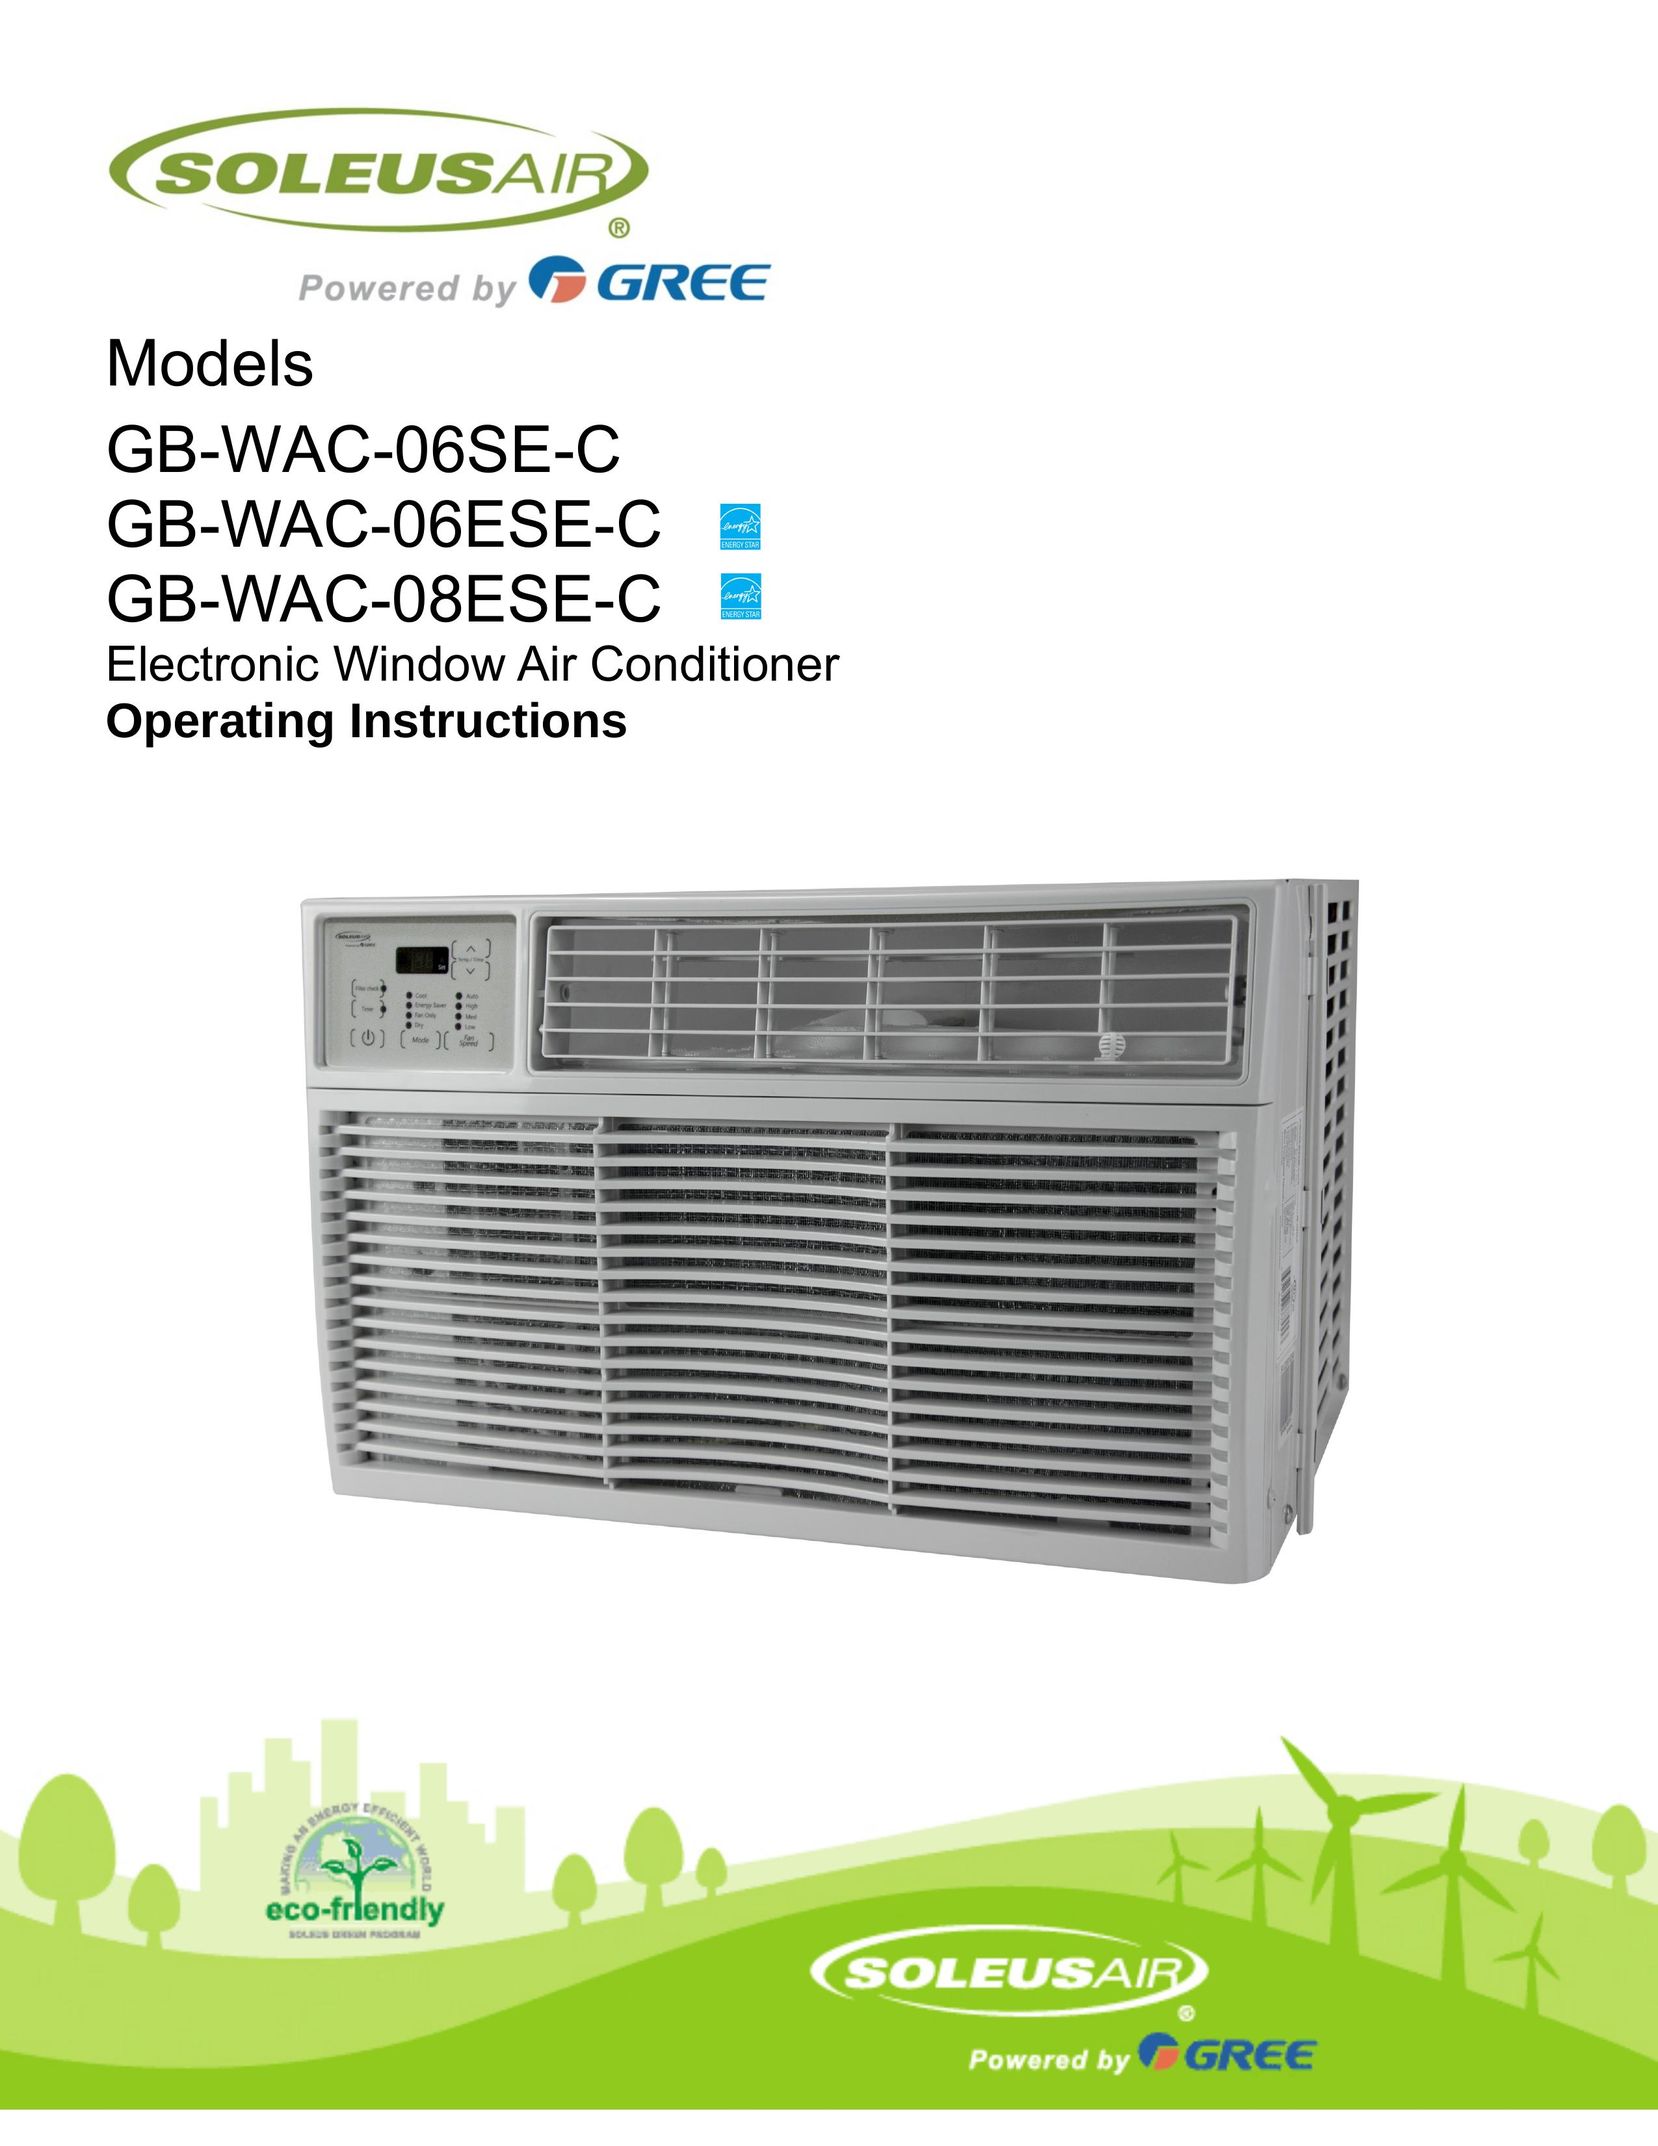 Soleus Air GB-WAC-08ESE-C Air Conditioner User Manual